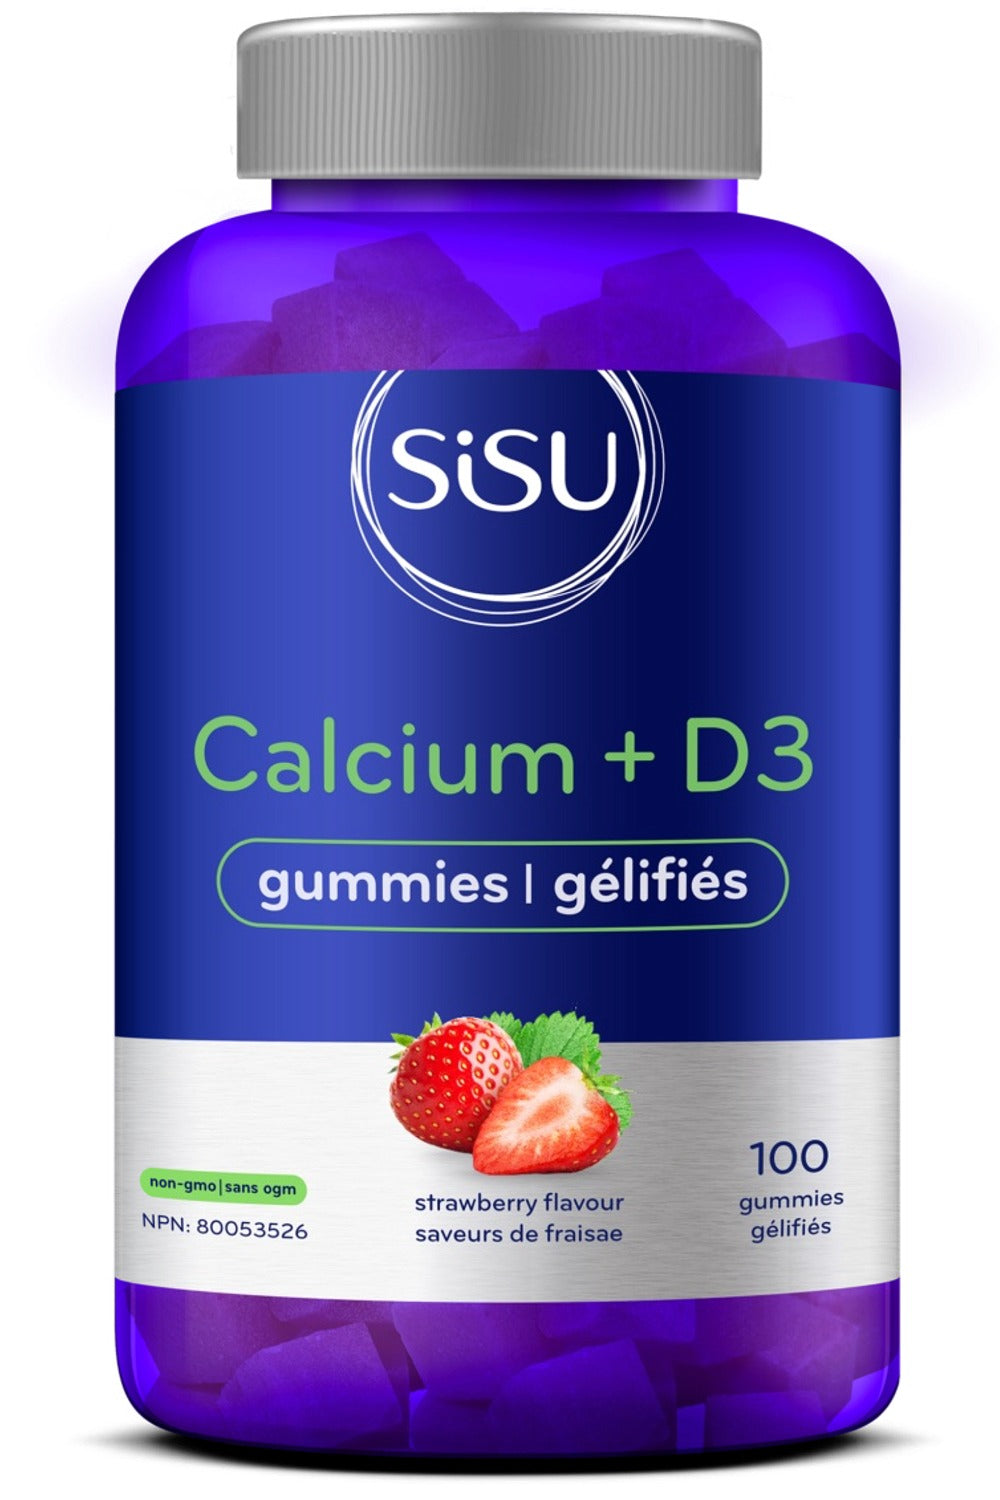 SISU Calcium & D3 Gummies (100 gummies)